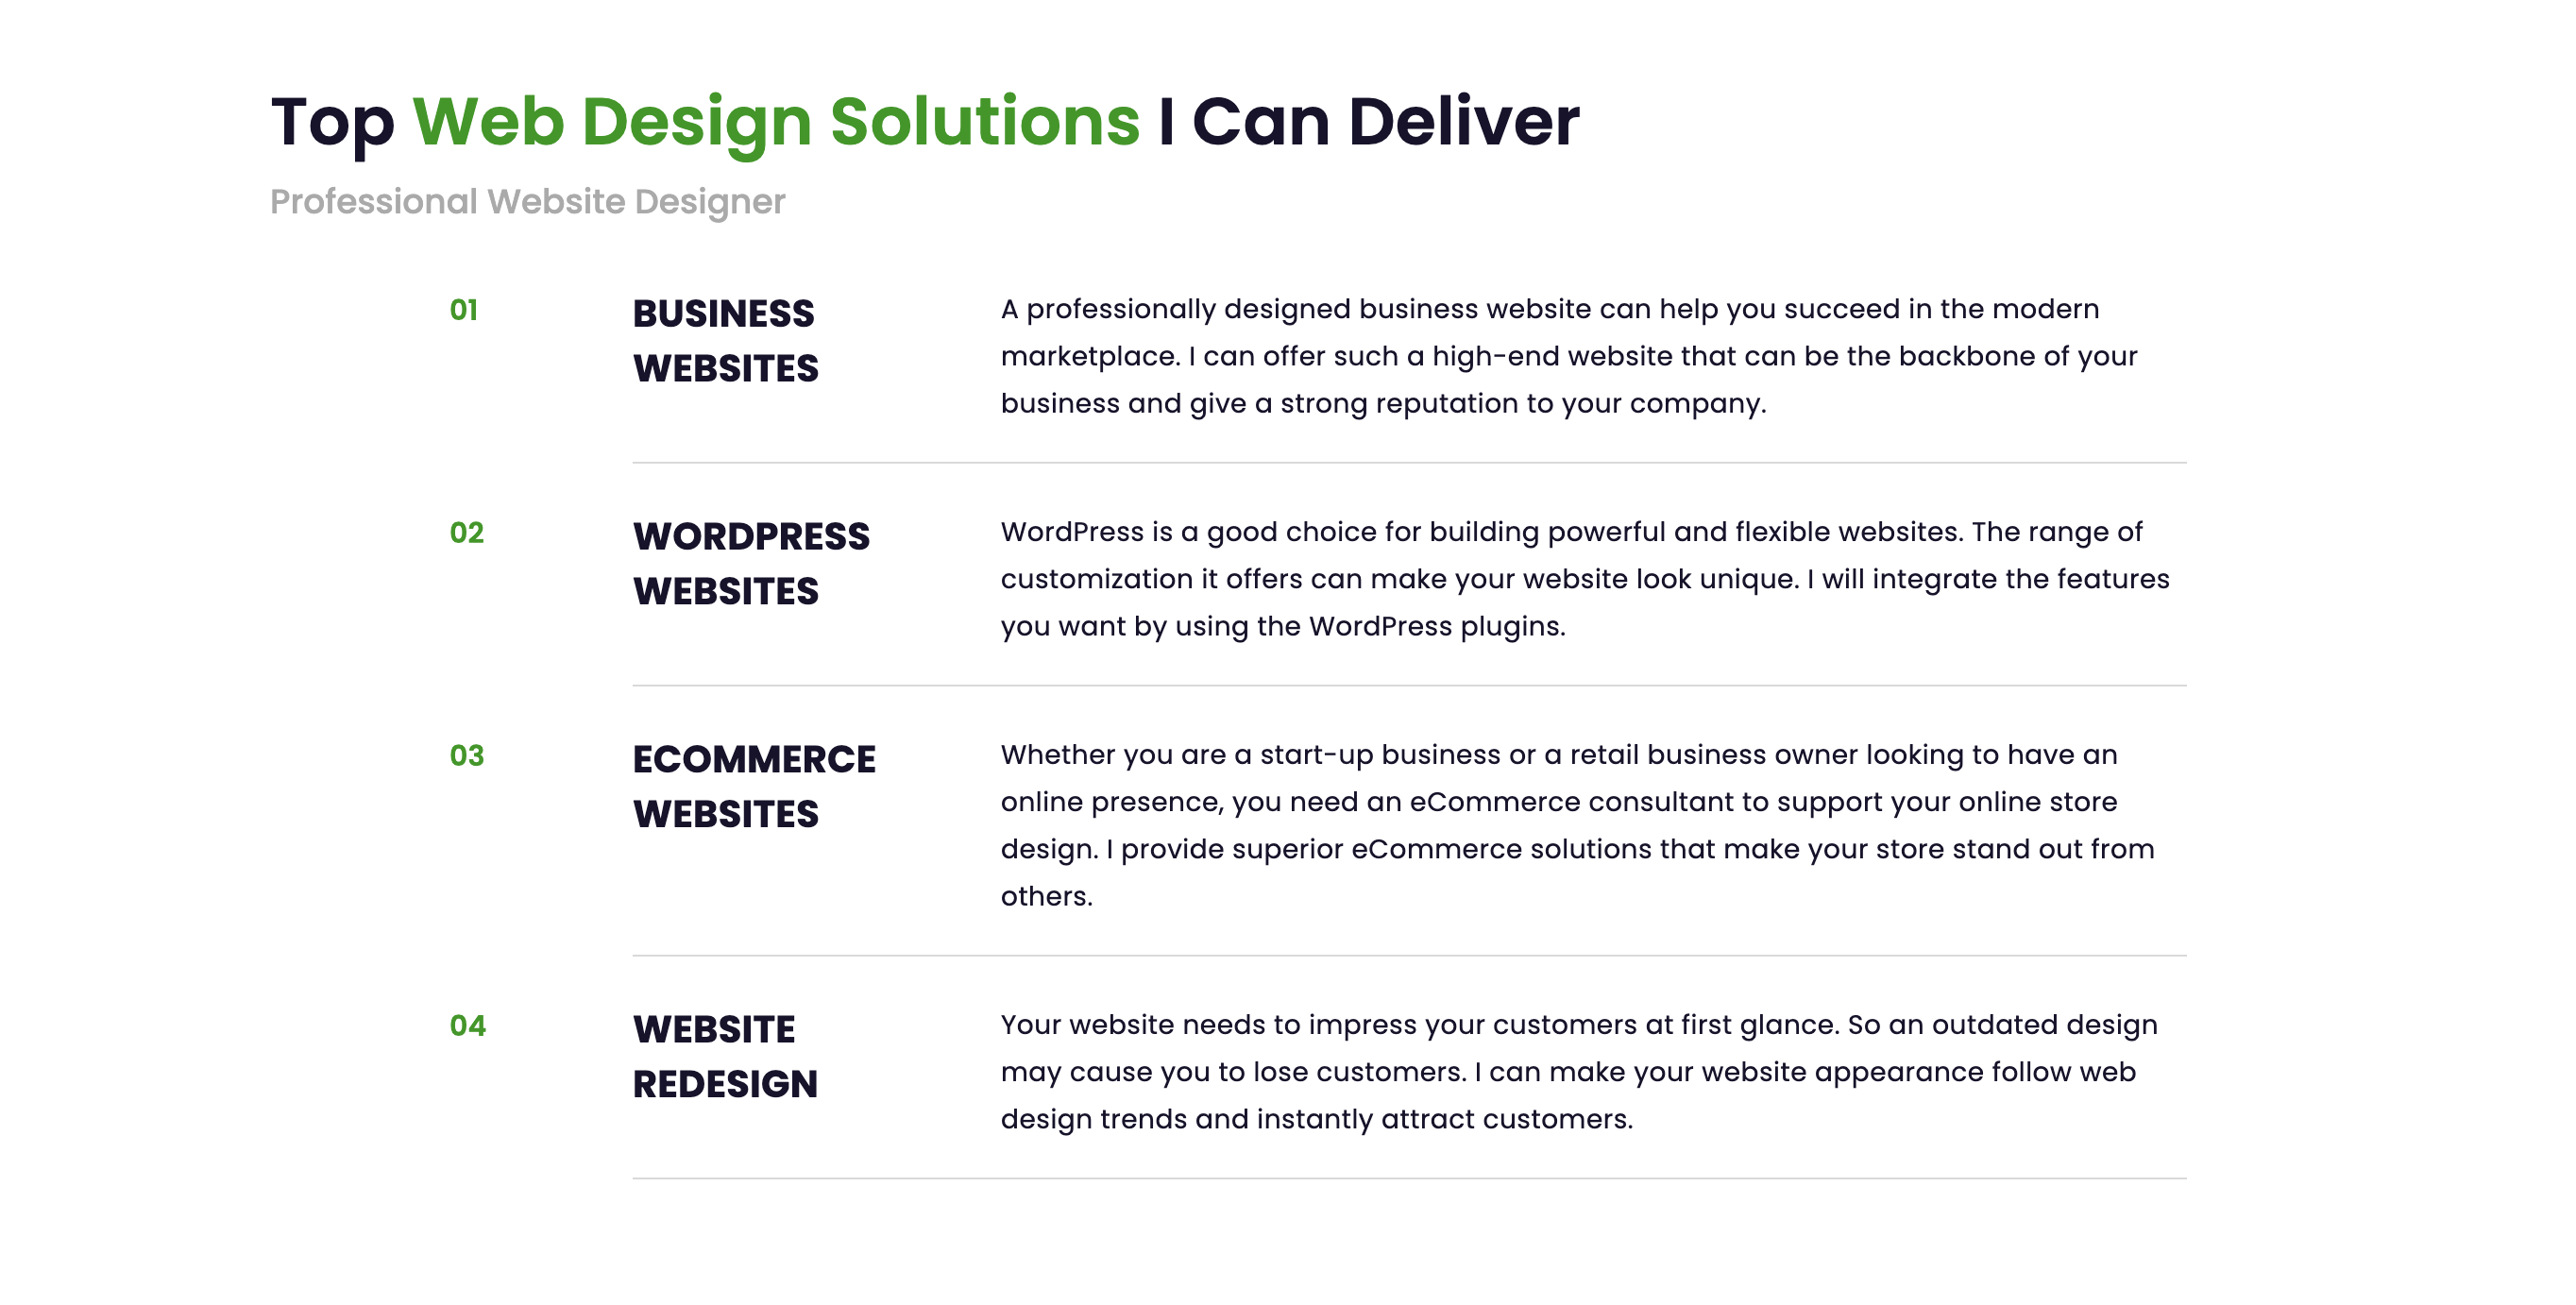 Web Design Services